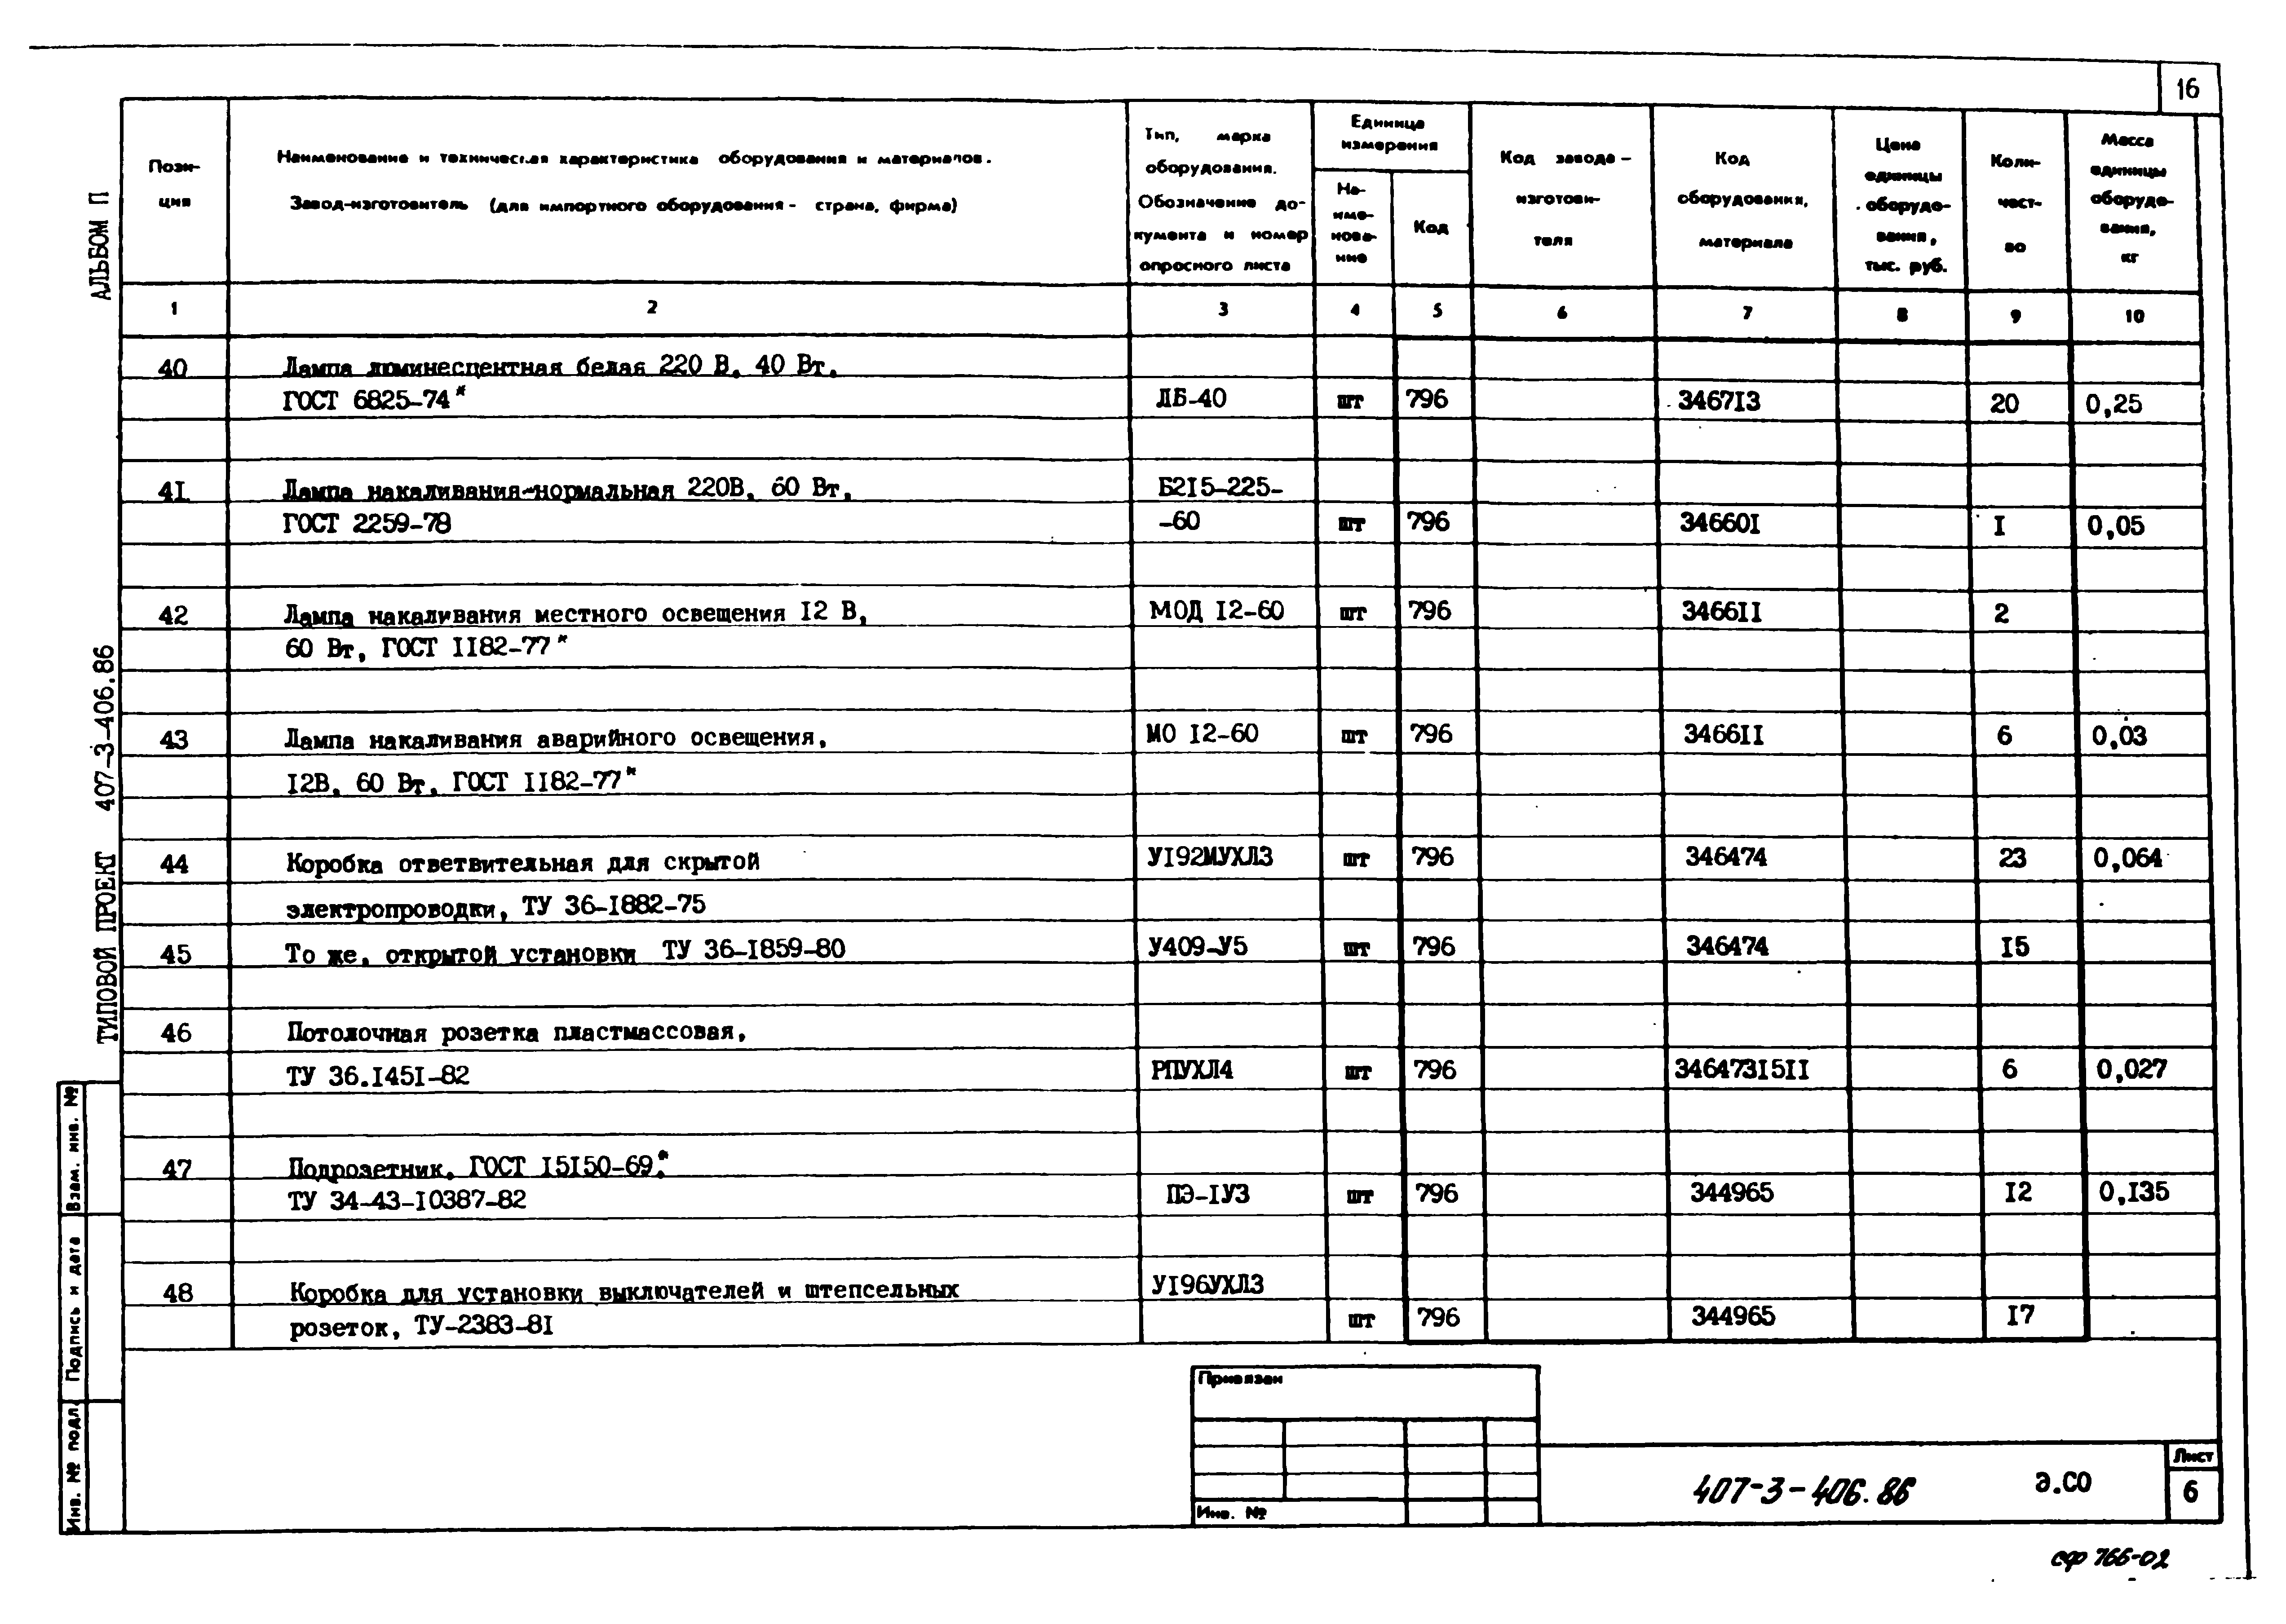 Типовой проект 407-3-406.86